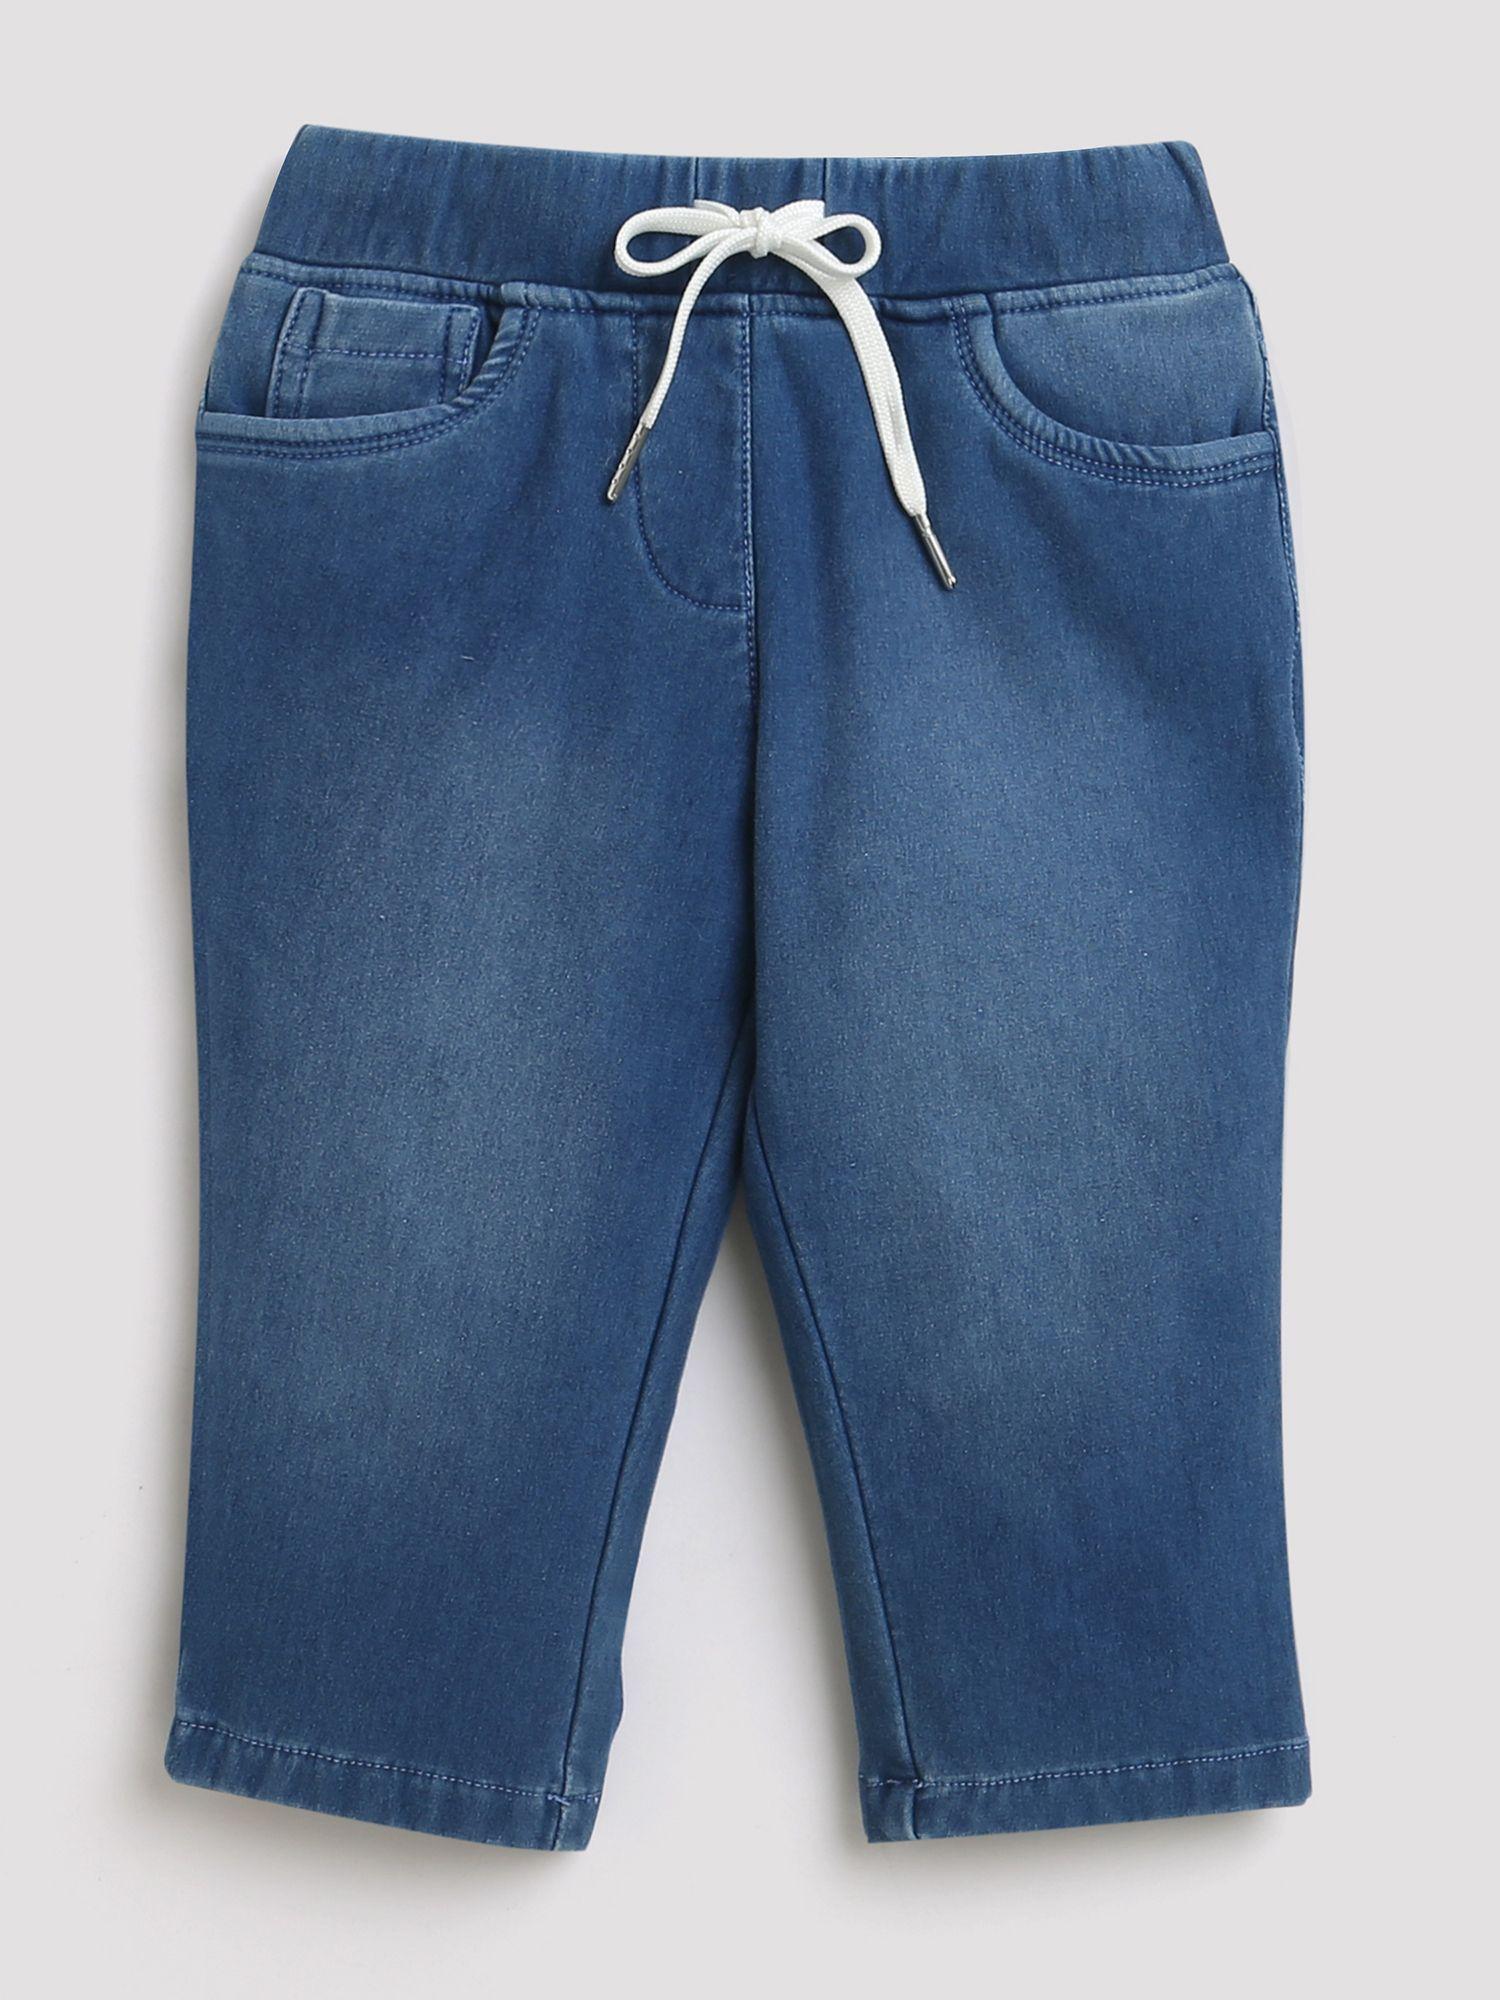 denim washed jeans - light blue